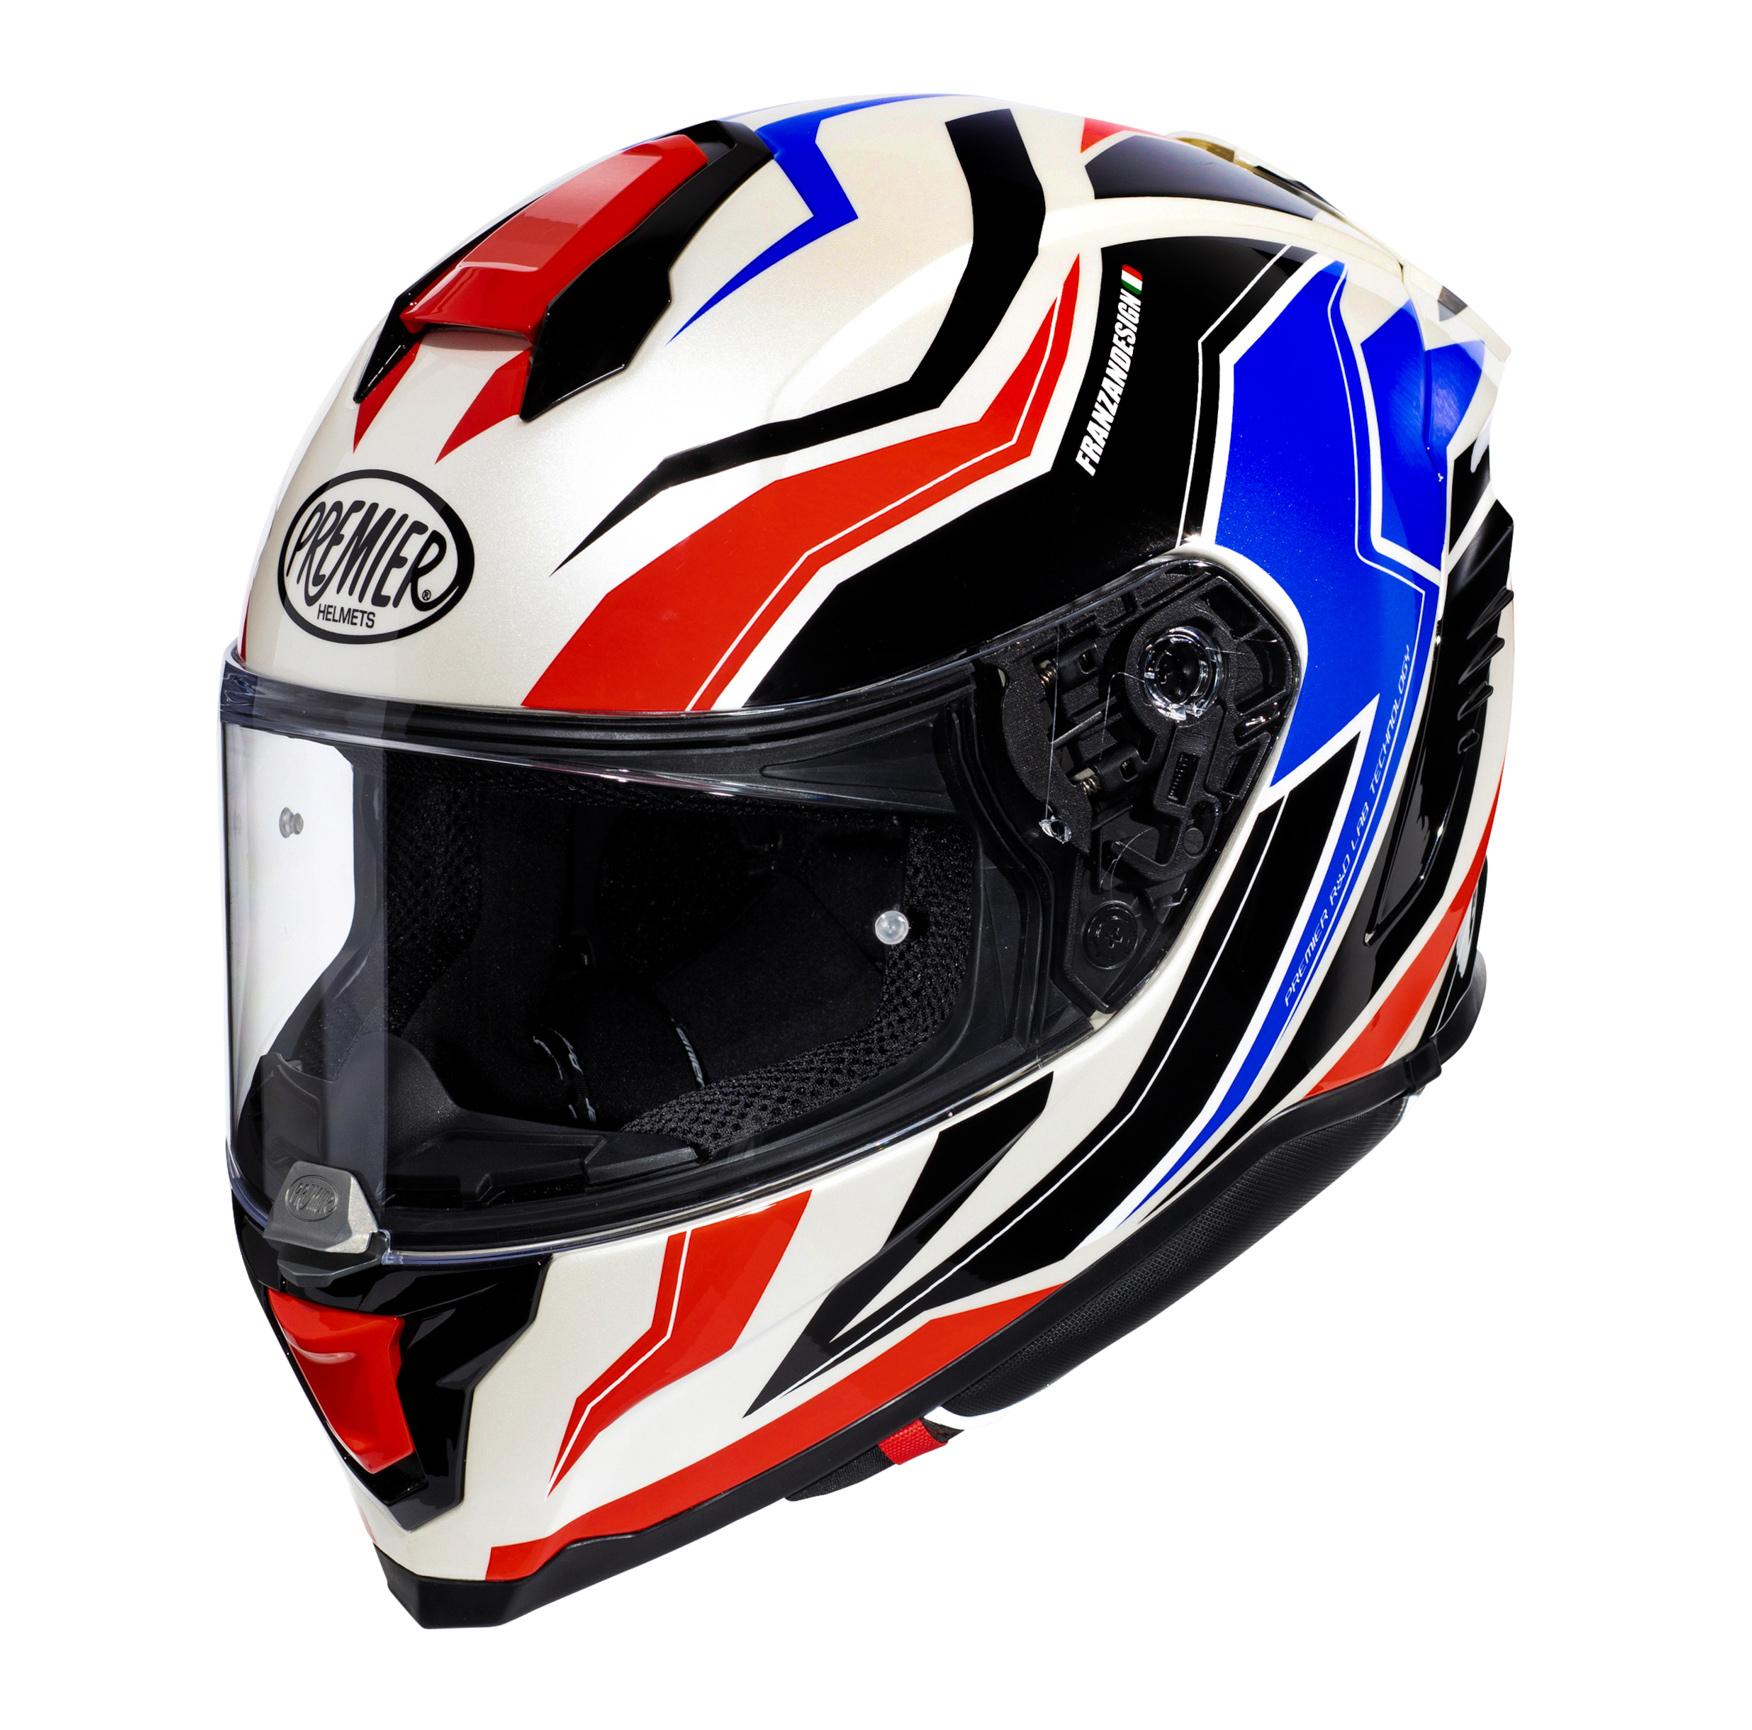 Premier Hyper Rw Full Face Motorcycle Helmet - Black/Red/White, S